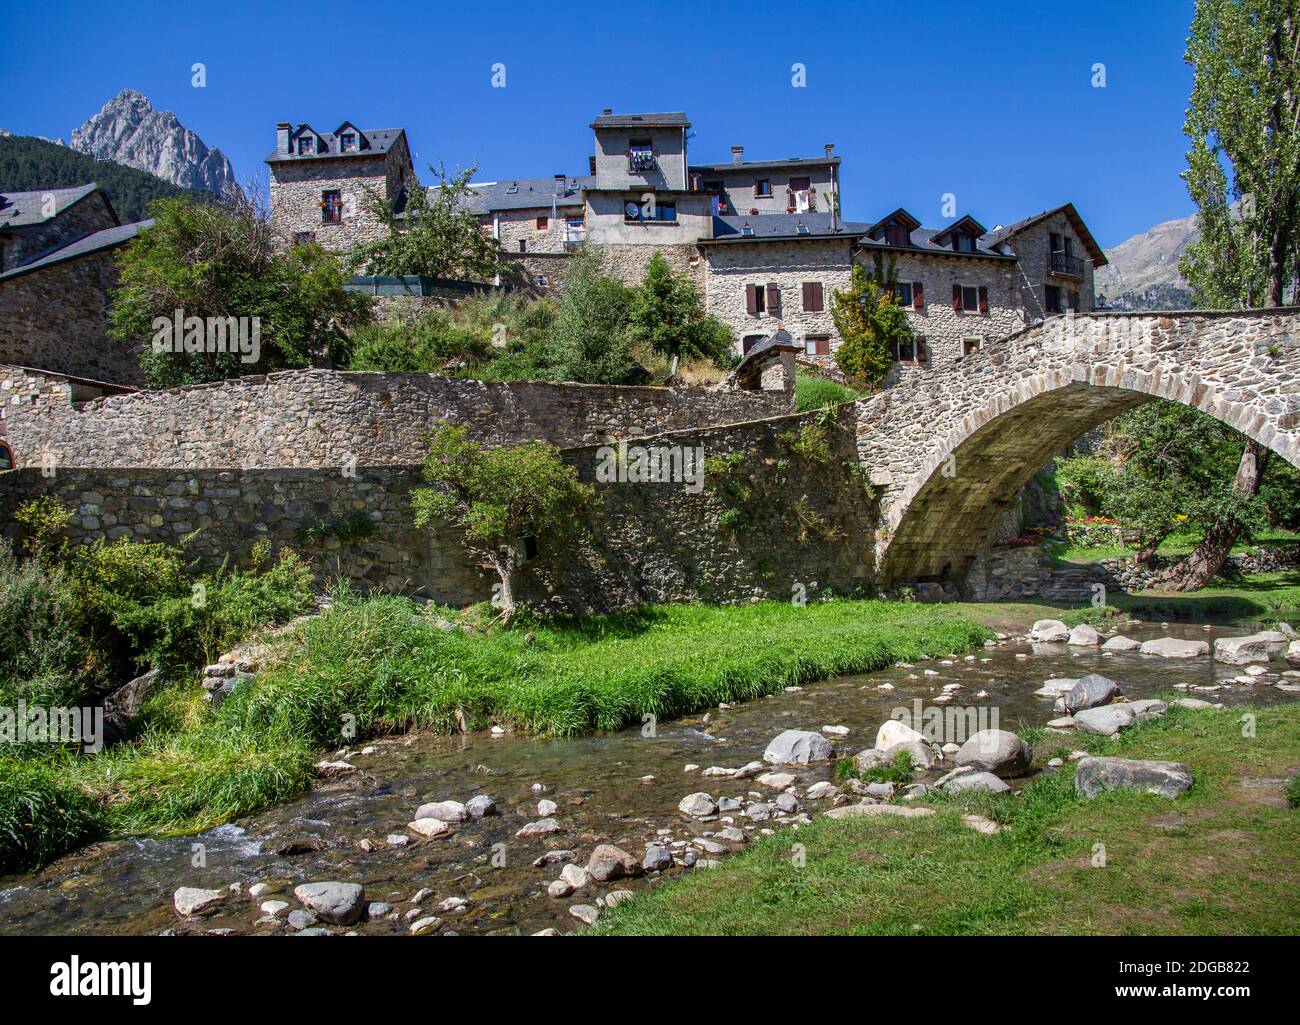 Bergdorf in Stein mit einer Brücke, über die ein Fluss fließt an einem sonnigen Sommertag gebaut, Sallent de Gallego, Huesca, Pyrenäen Spanien, horizontal Stockfoto